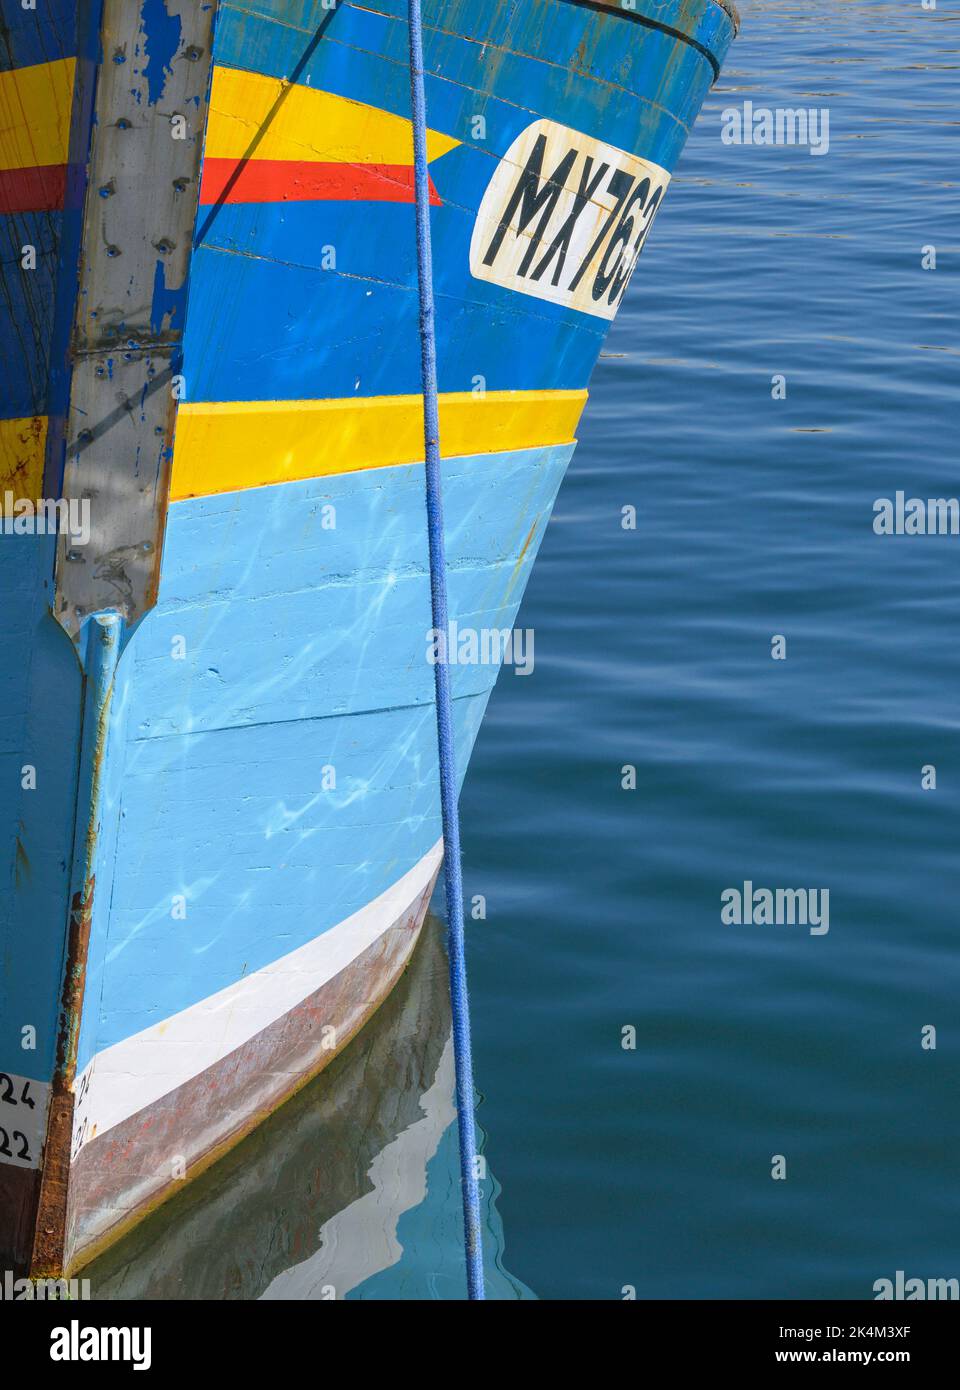 Détail du devant d'un bateau de pêche breton peint aux couleurs vives amarré au Port du Rosemeur Douarnenez Finistère Bretagne France Banque D'Images